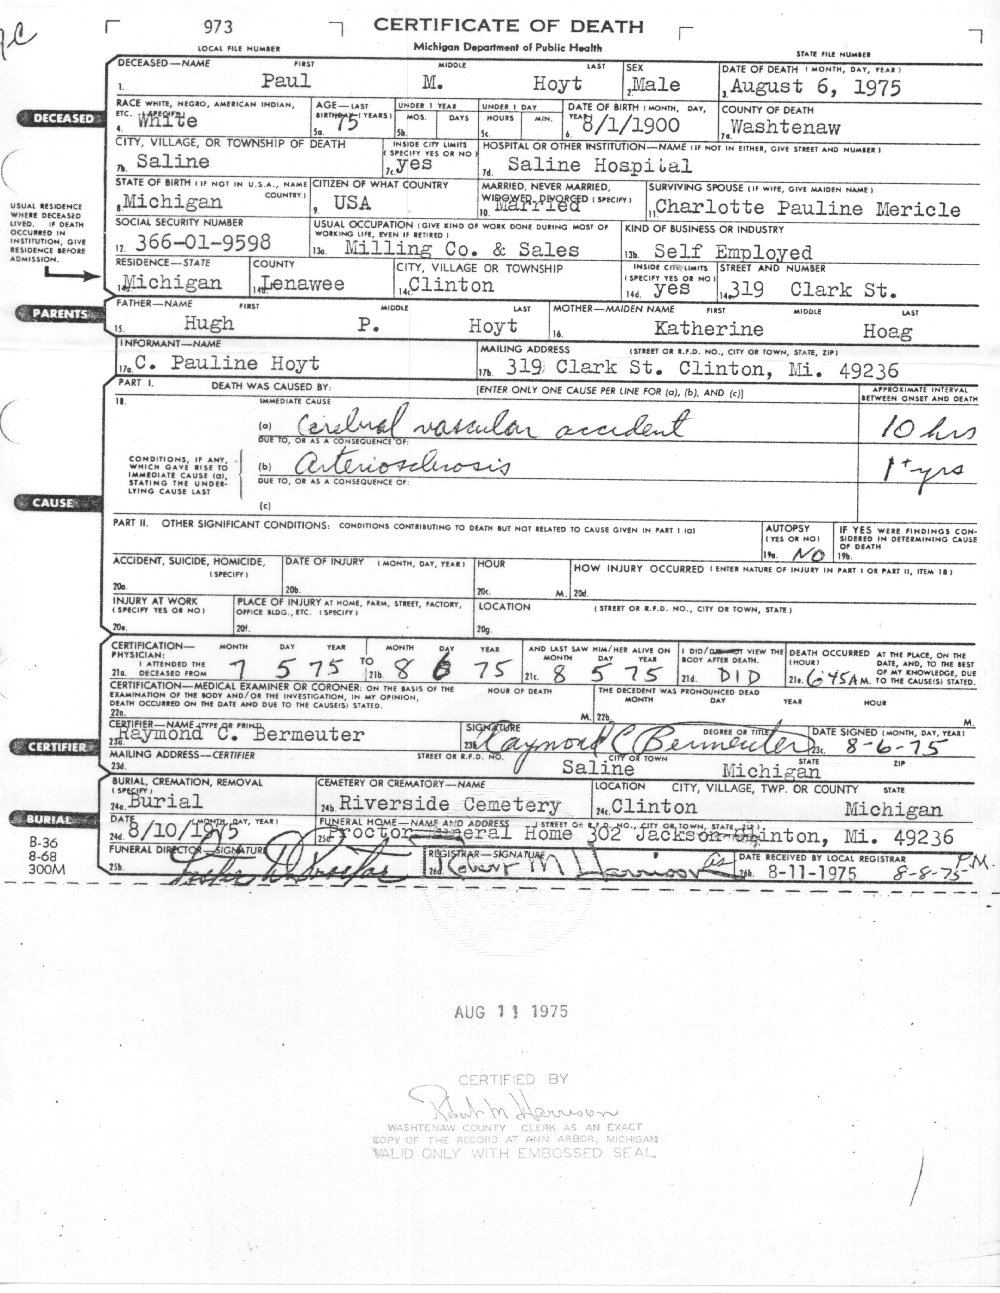 Paul M Hoyt's Death Certificate 1975